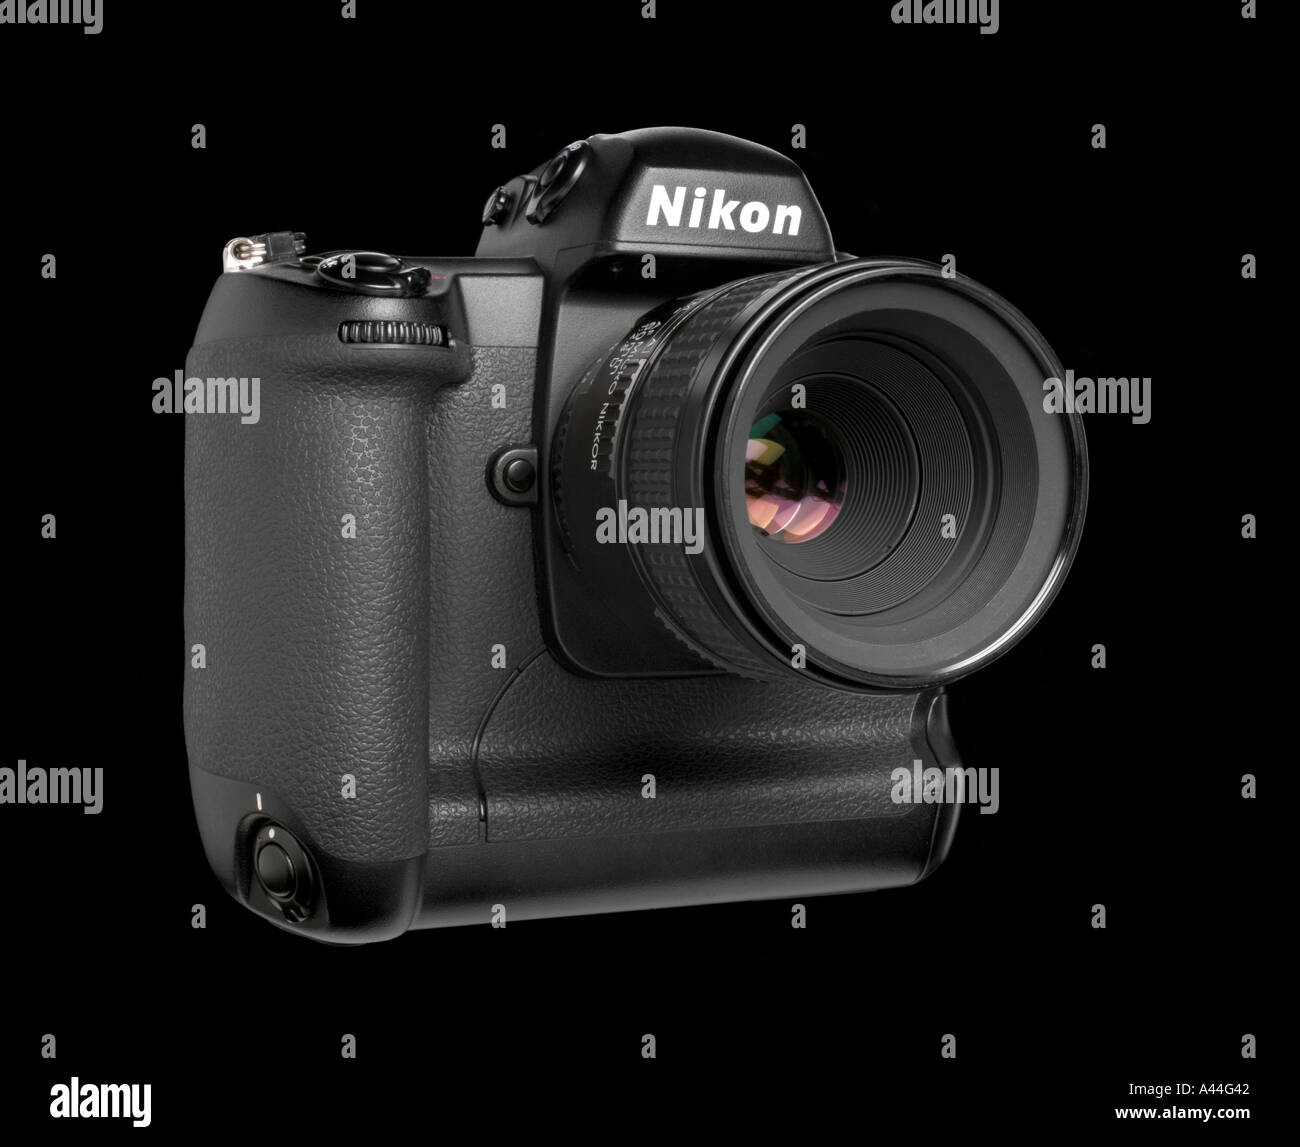 Nikon D1 digitale reflex a lente singola fotocamera SLR con obiettivo macro da 60 mm Foto Stock